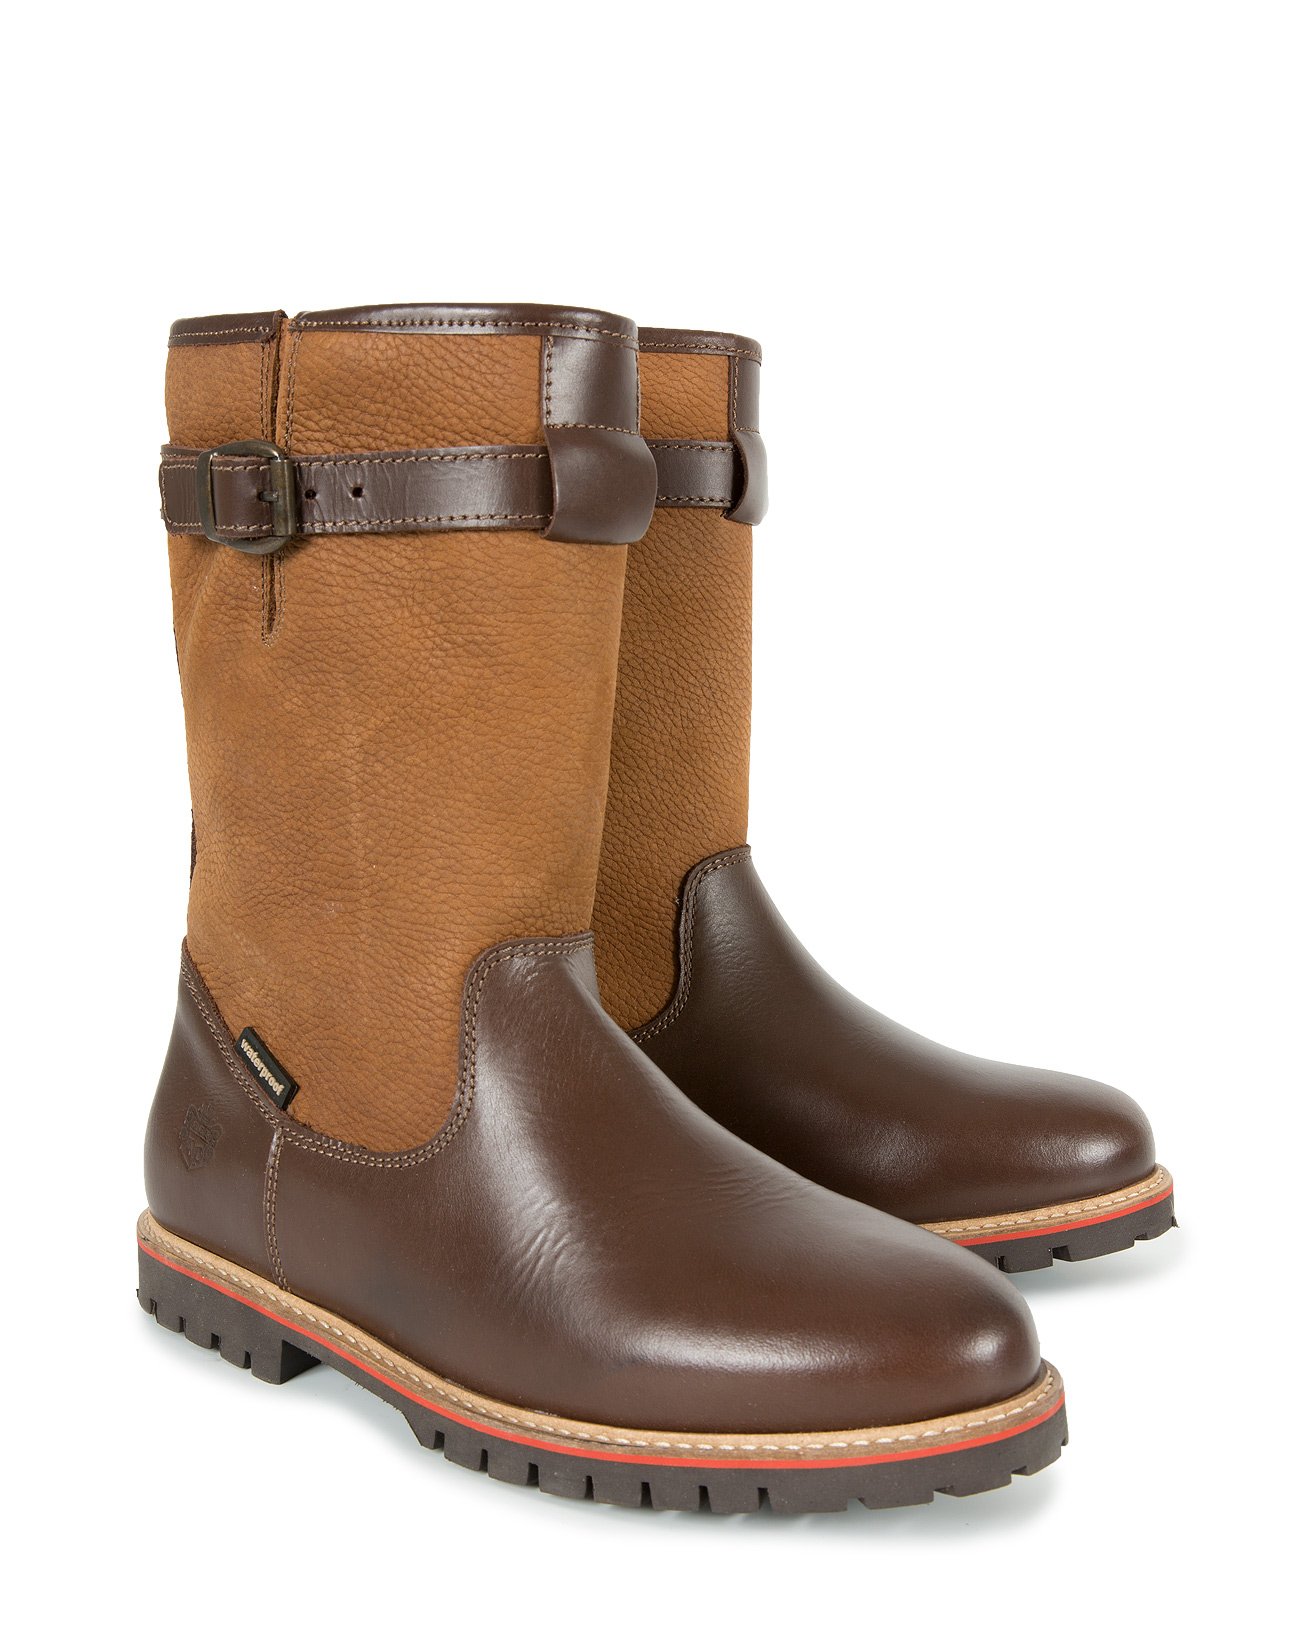 7527-waterproof boot -calf-pair.jpg